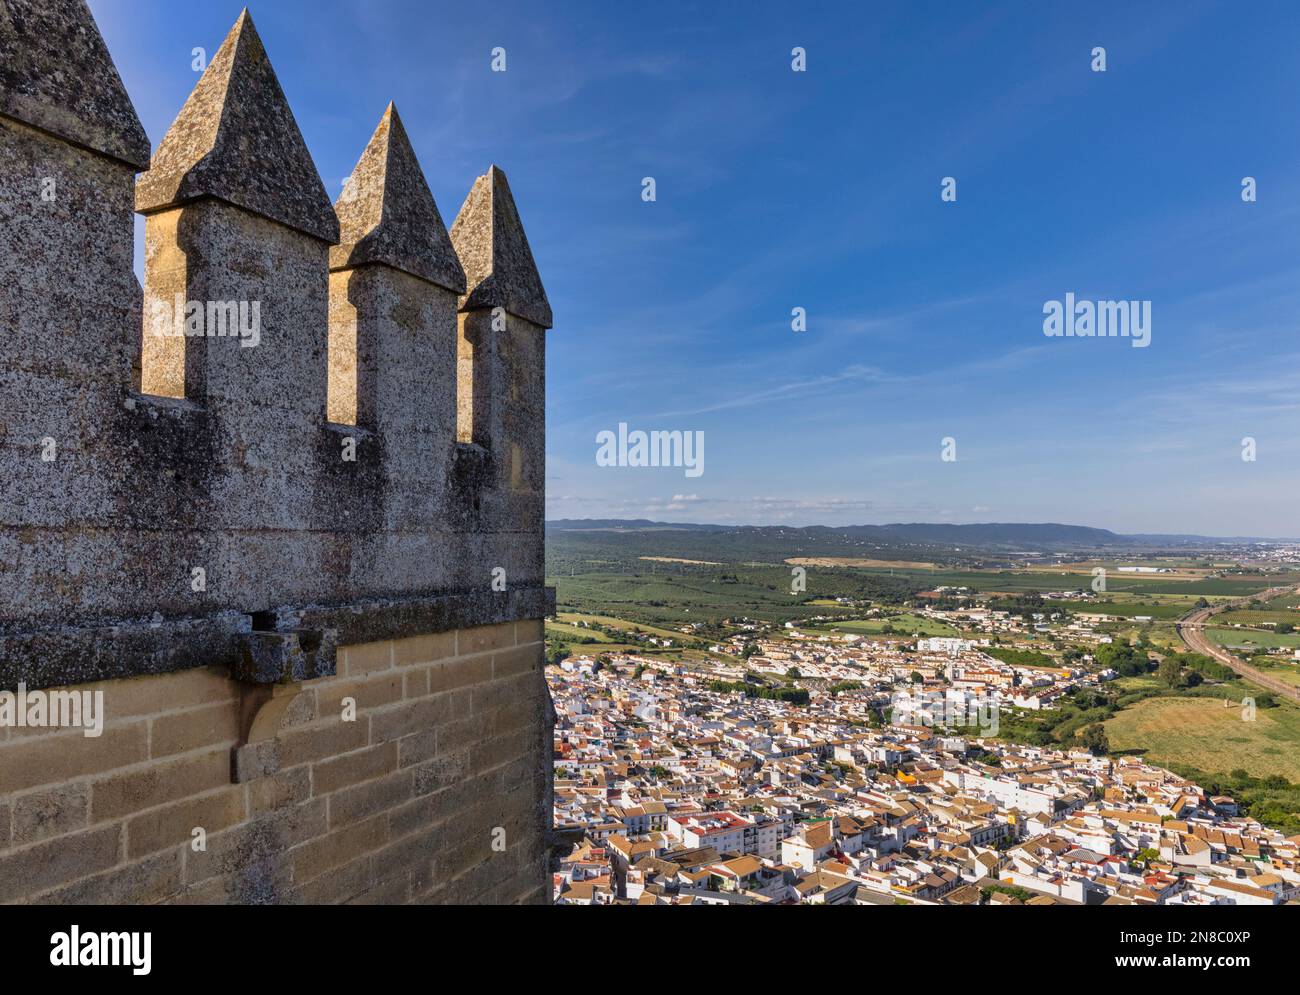 Almodovar del Rio, Provinz Cordoba, Andalusien, Spanien. Gesamtblick von den Festungsmauern der Burg Almodovar. Das Schloss wurde als römisches Fort gegründet Stockfoto